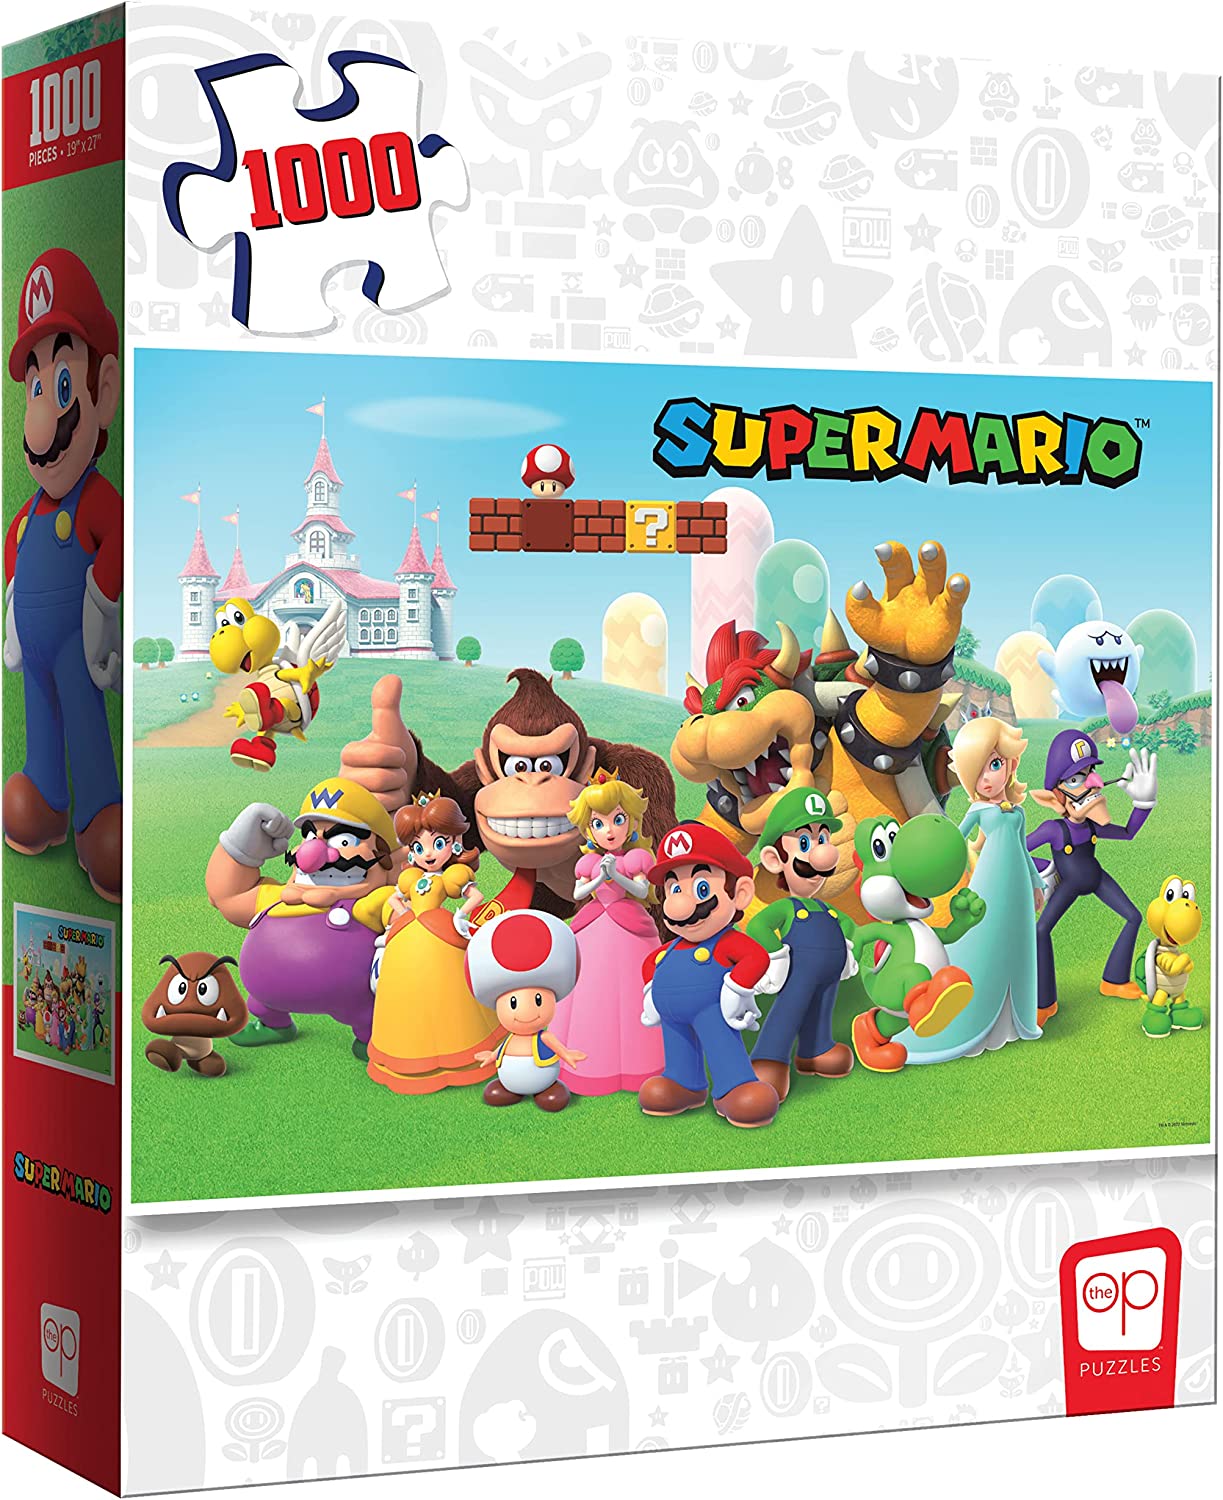 1000 PC Puzzle: Super Mario Mushroom Kingdom 